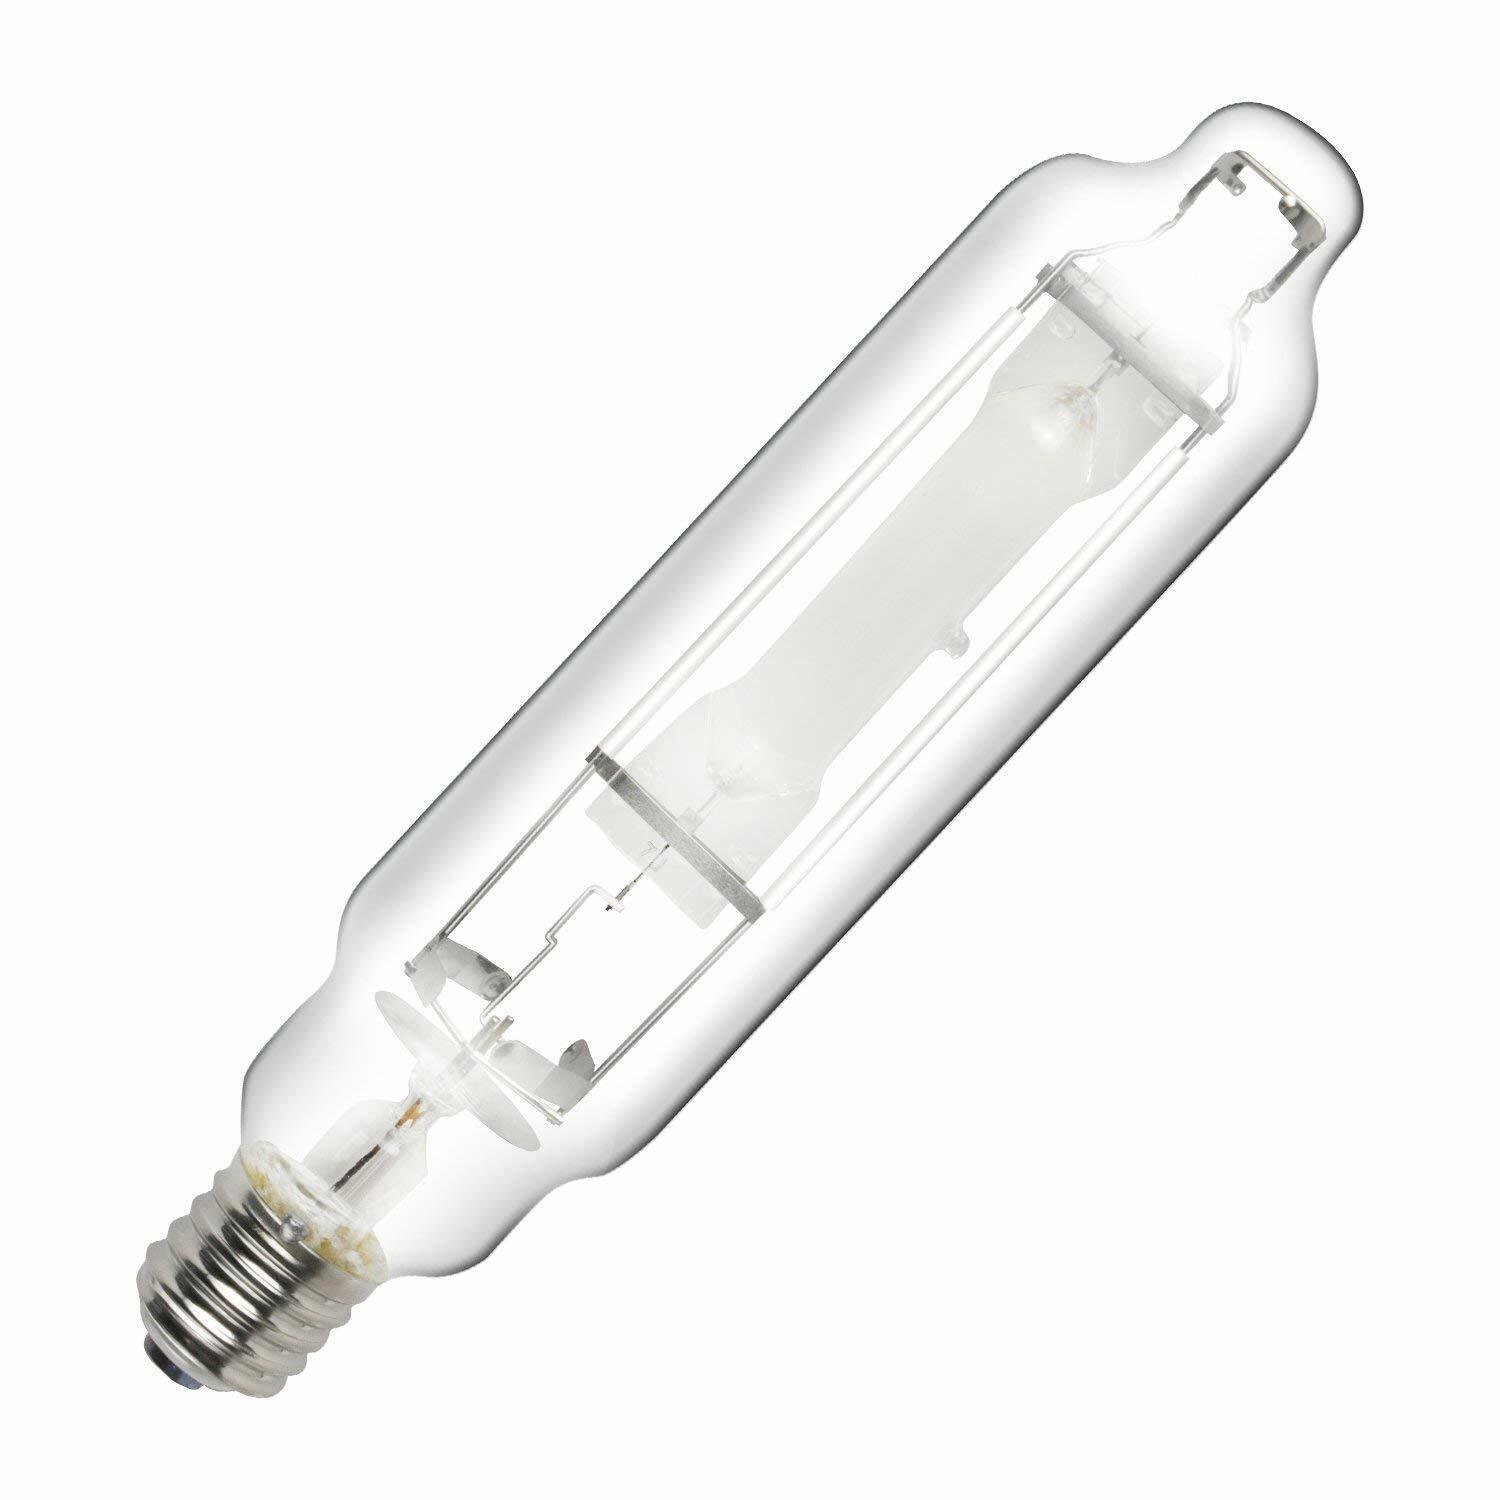 1/2/4/6-Pack iPower 1000W Metal Halide MH Grow Light Bulb Lamp High PAR 6000K